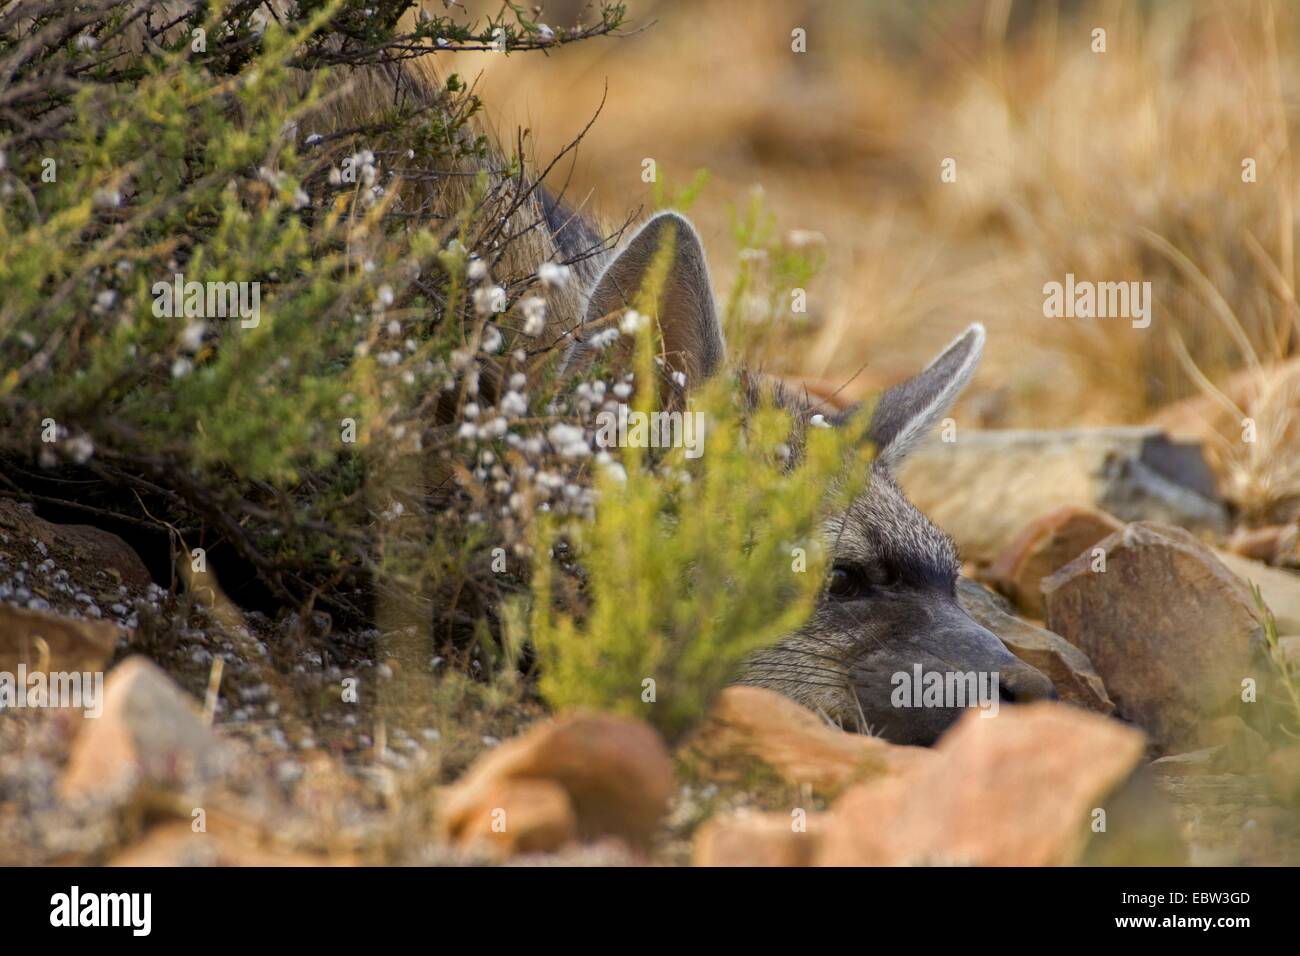 Aardwolf (Proteles cristatus), yacía en el suelo, en el sur de África, en el Cabo Oriental, el Parque Nacional cebra de montaña Foto de stock